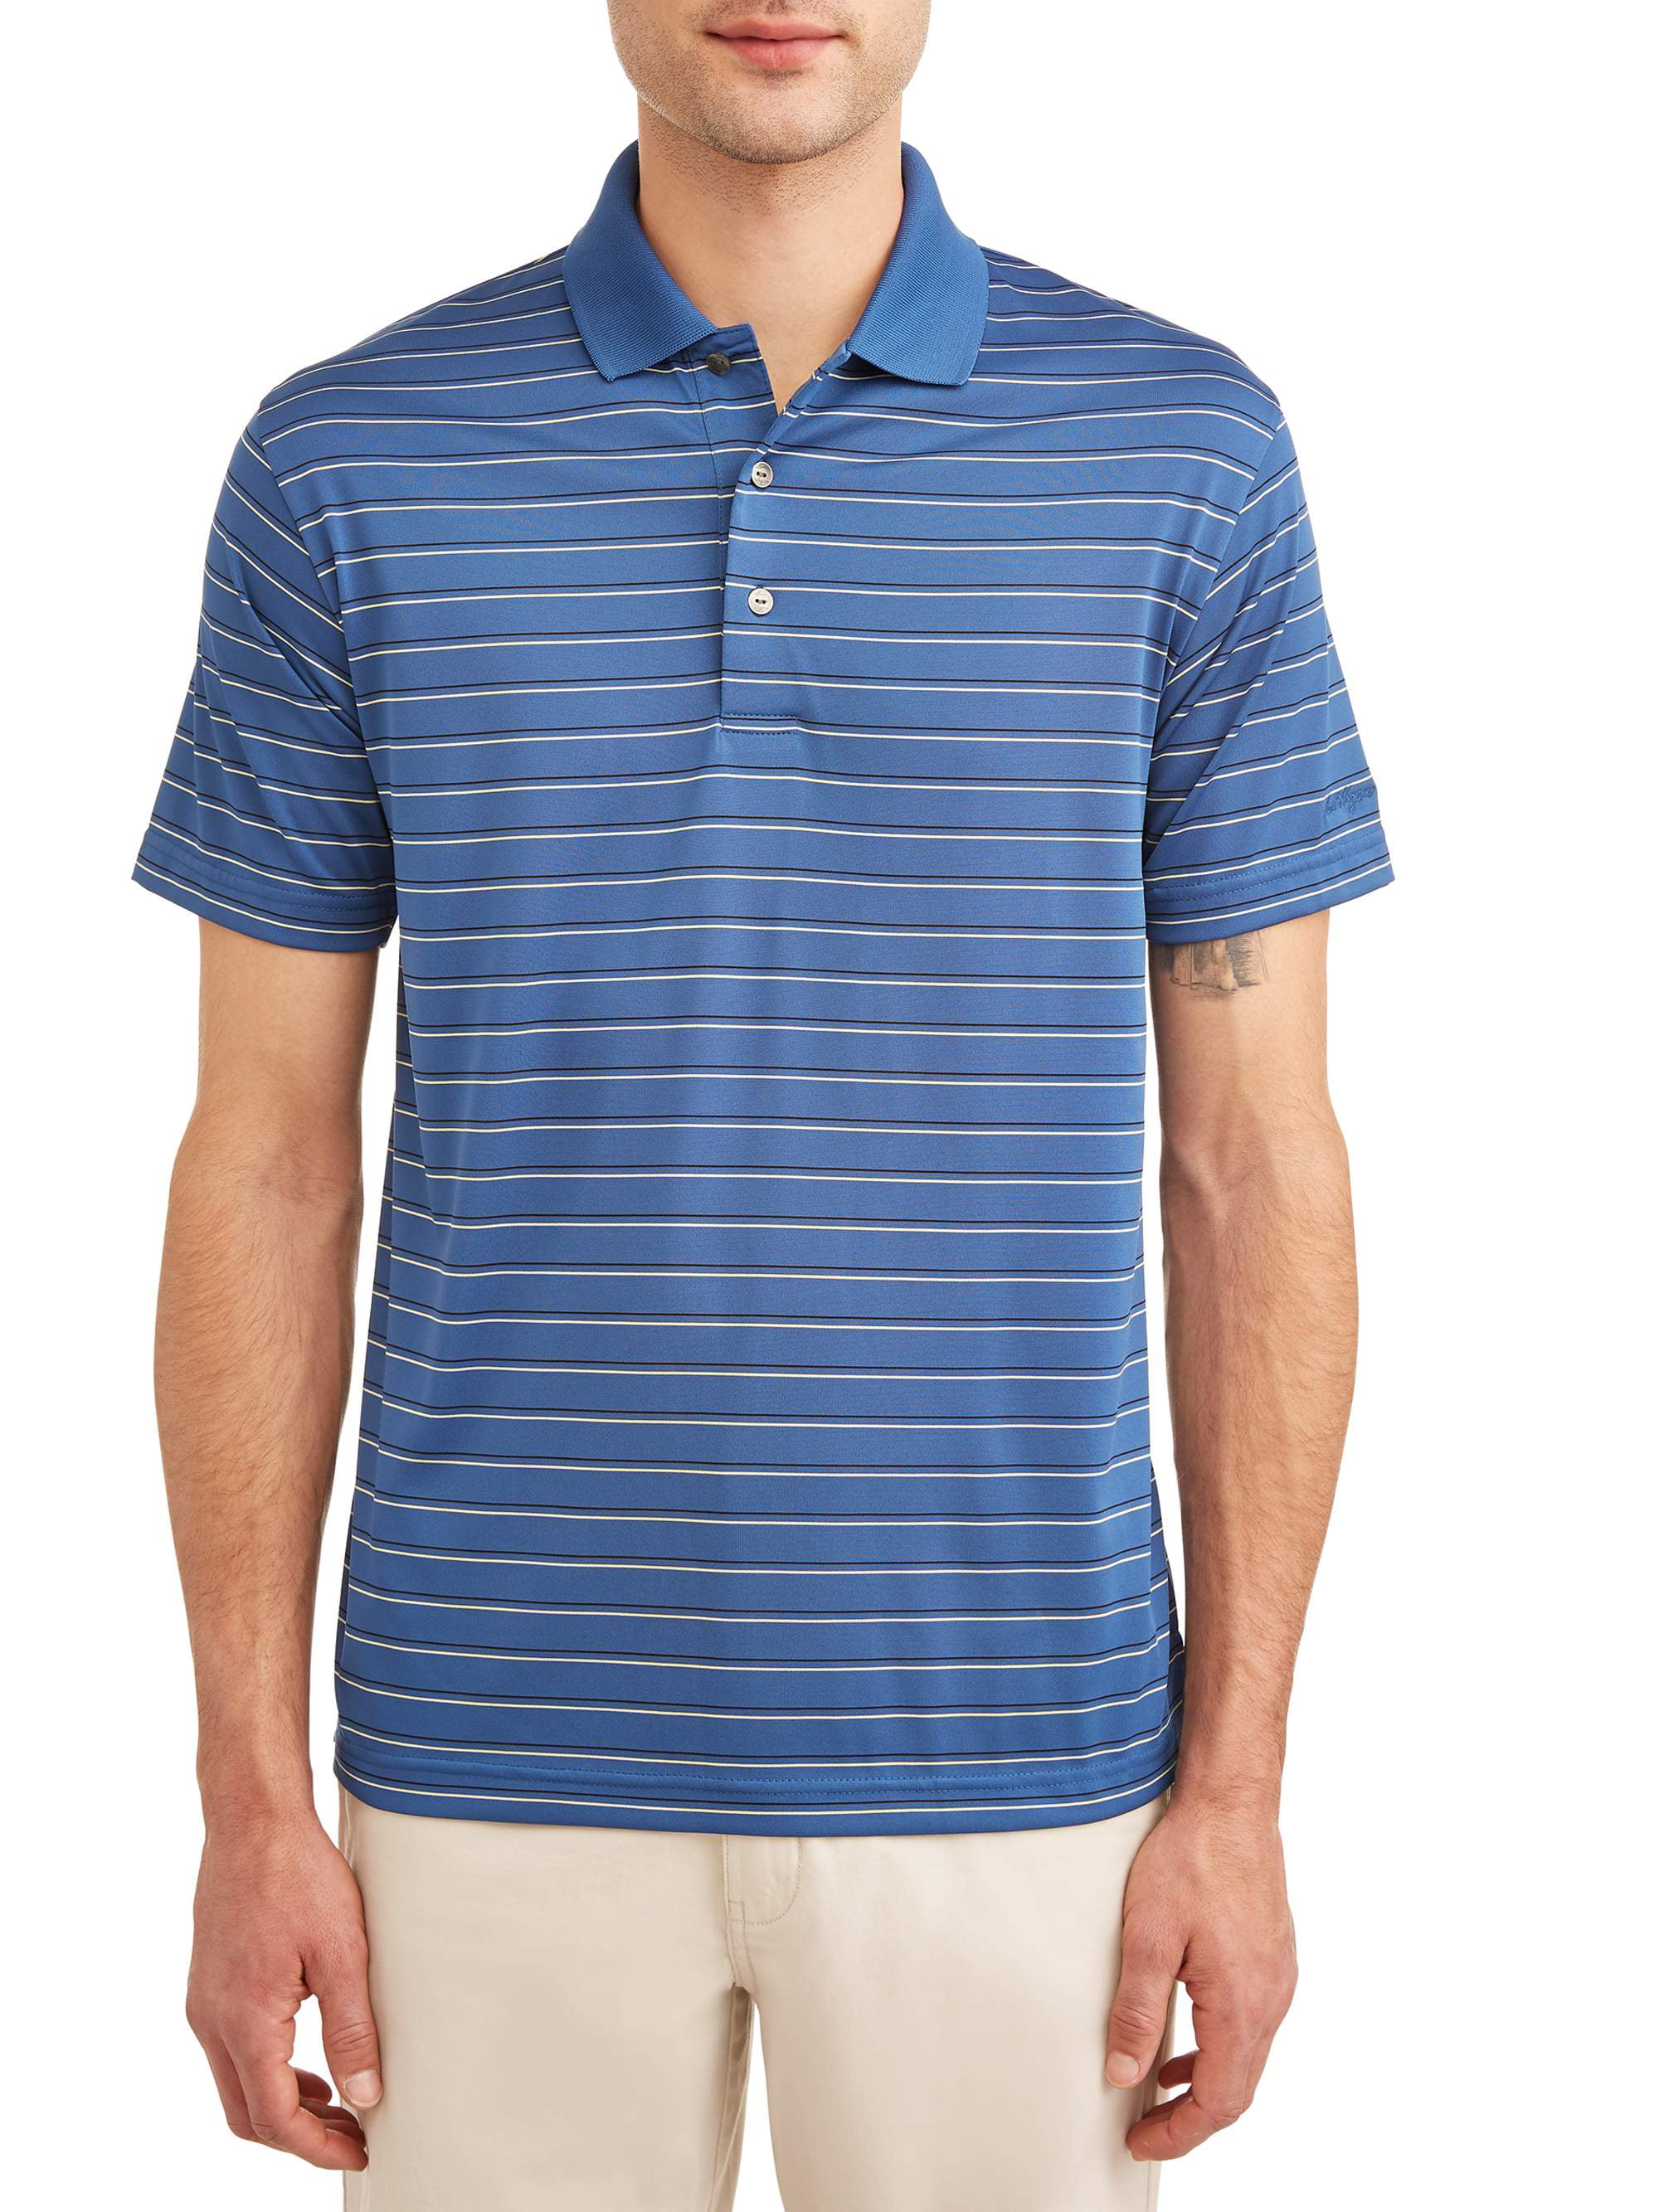 Ben Hogan Men's Performance Short Sleeve Striped Polo Shirt - Walmart.com